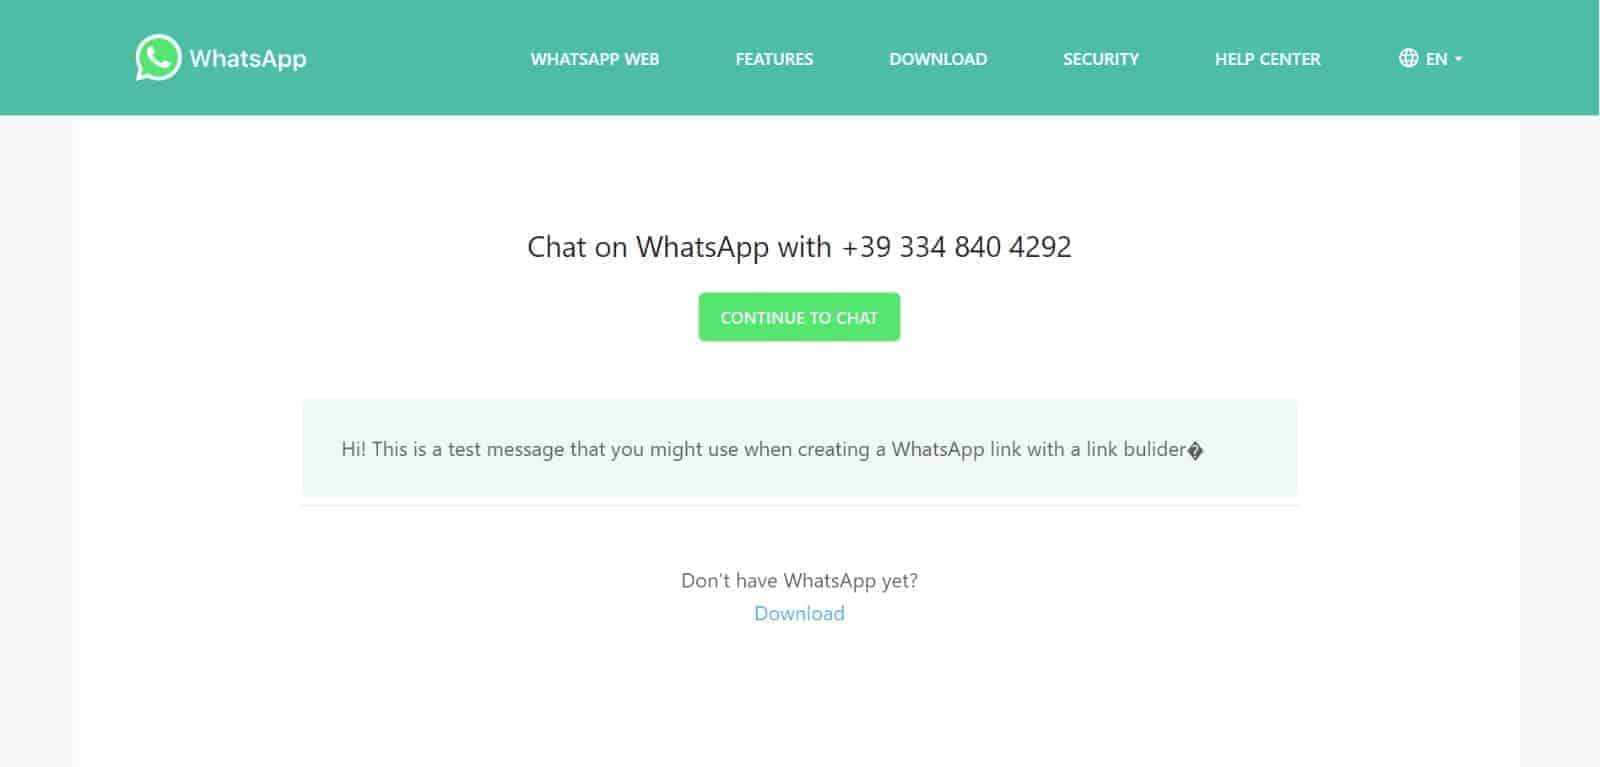 Créer un lien WhatsApp: voici comment faire